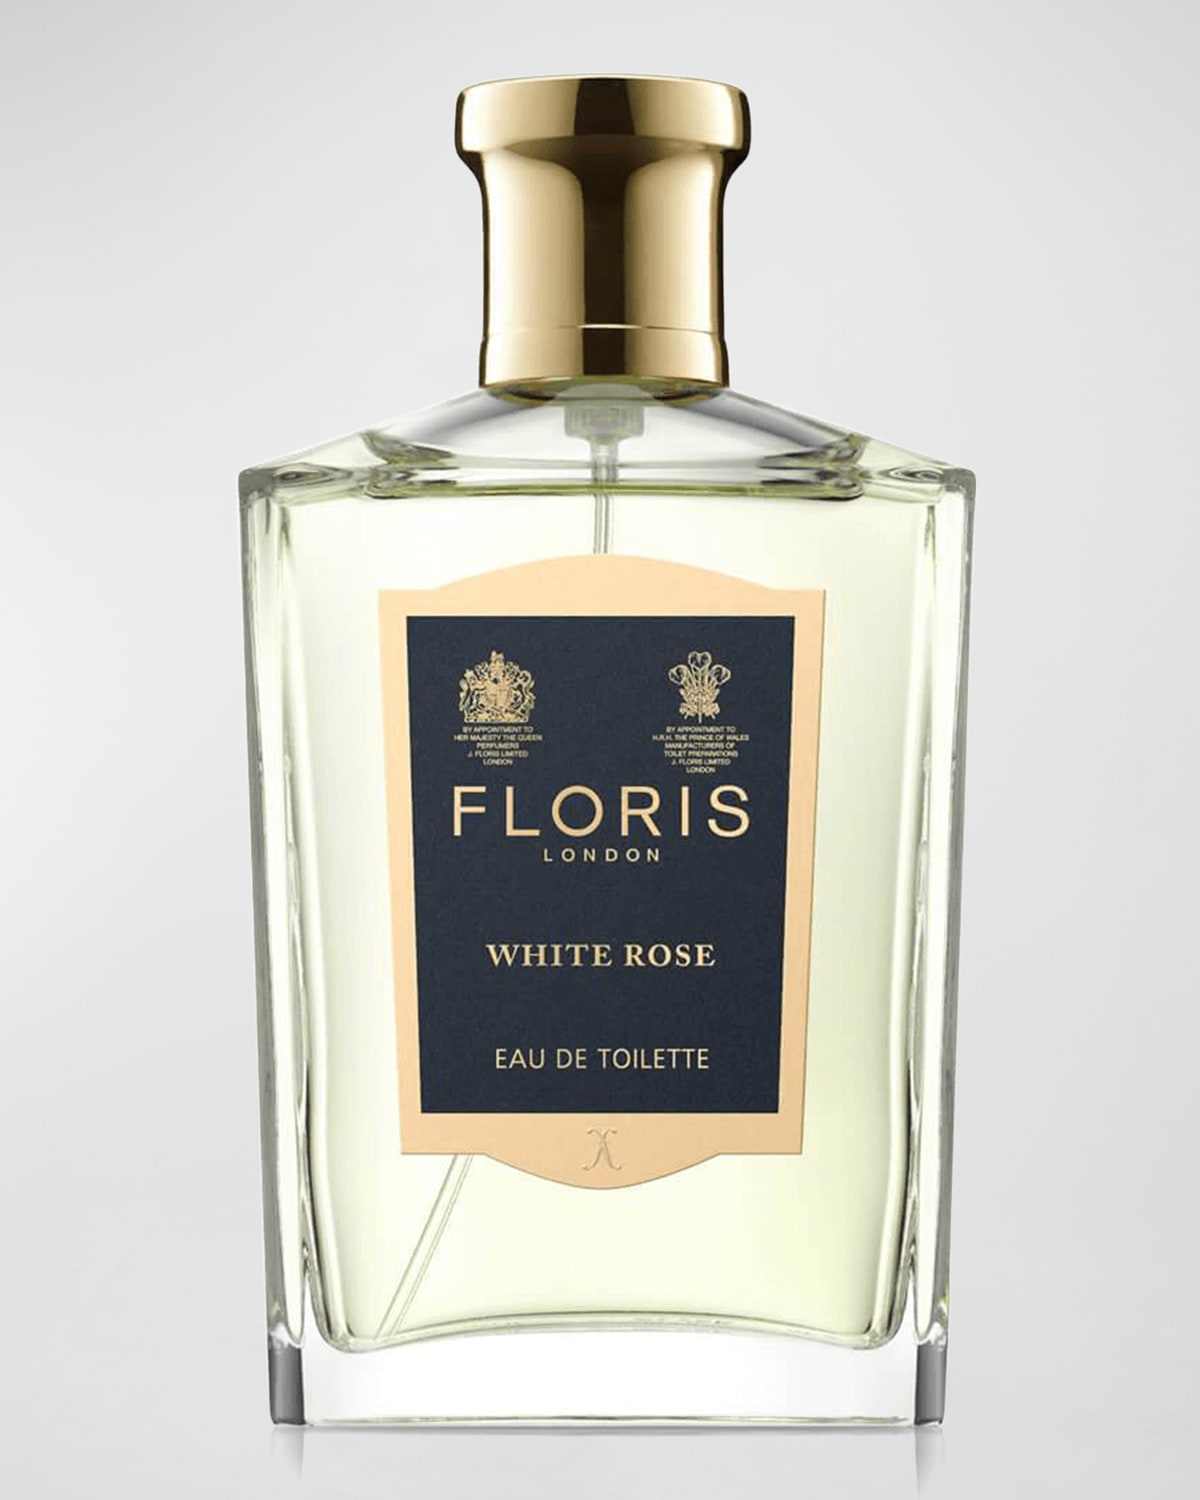 Floris London White Rose Eau de Toilette, 3.4 oz.